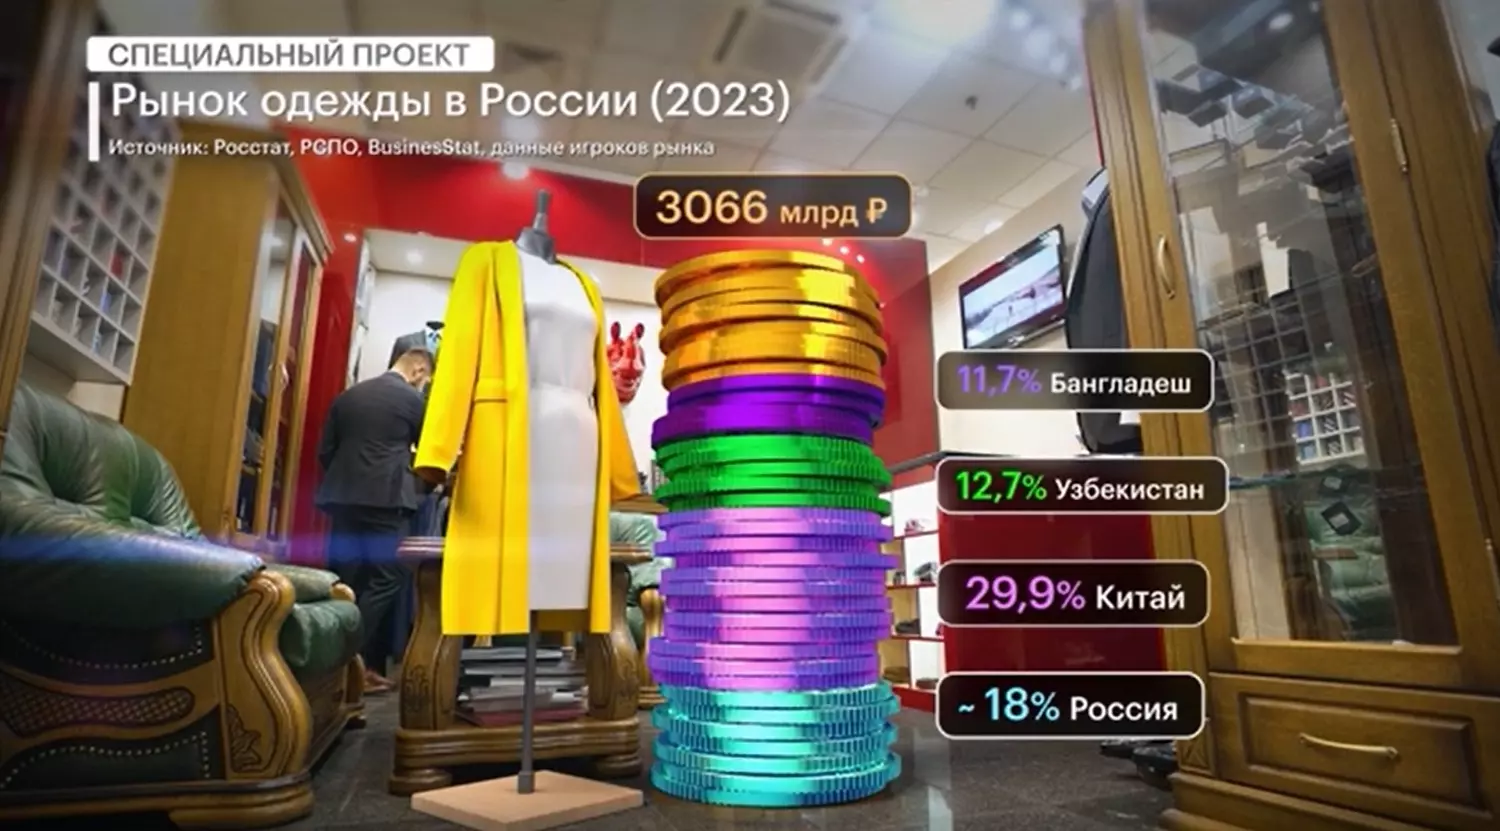 Рынок одежды в России